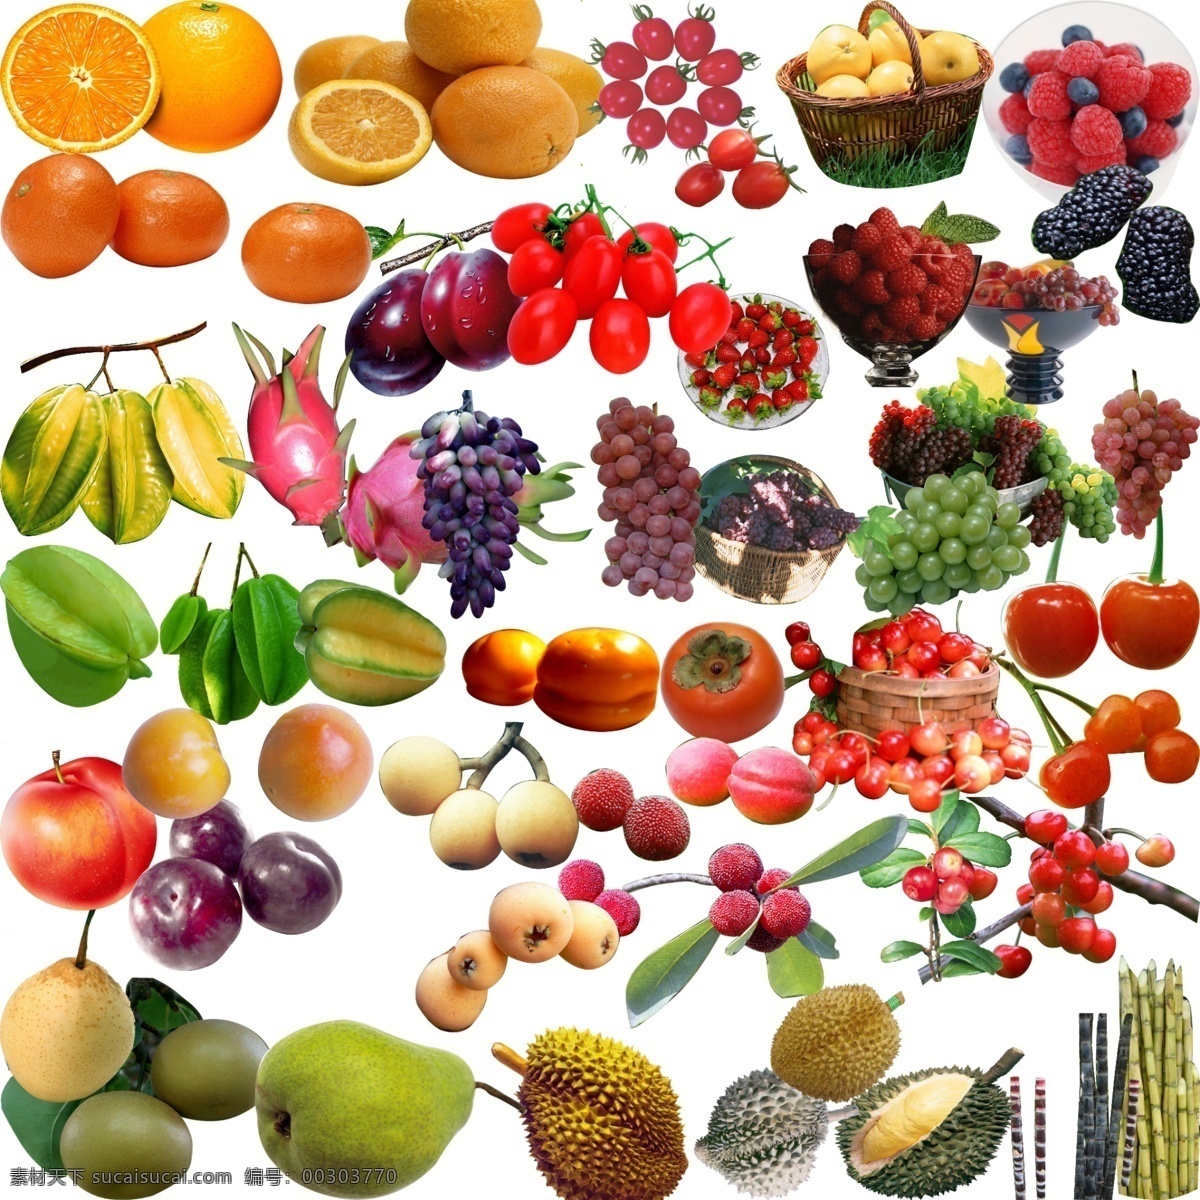 水果分成素材 水果 葡萄 橙子 樱桃 鸭梨 梨 柿子 榴莲 甘蔗 草莓 火龙果 分层